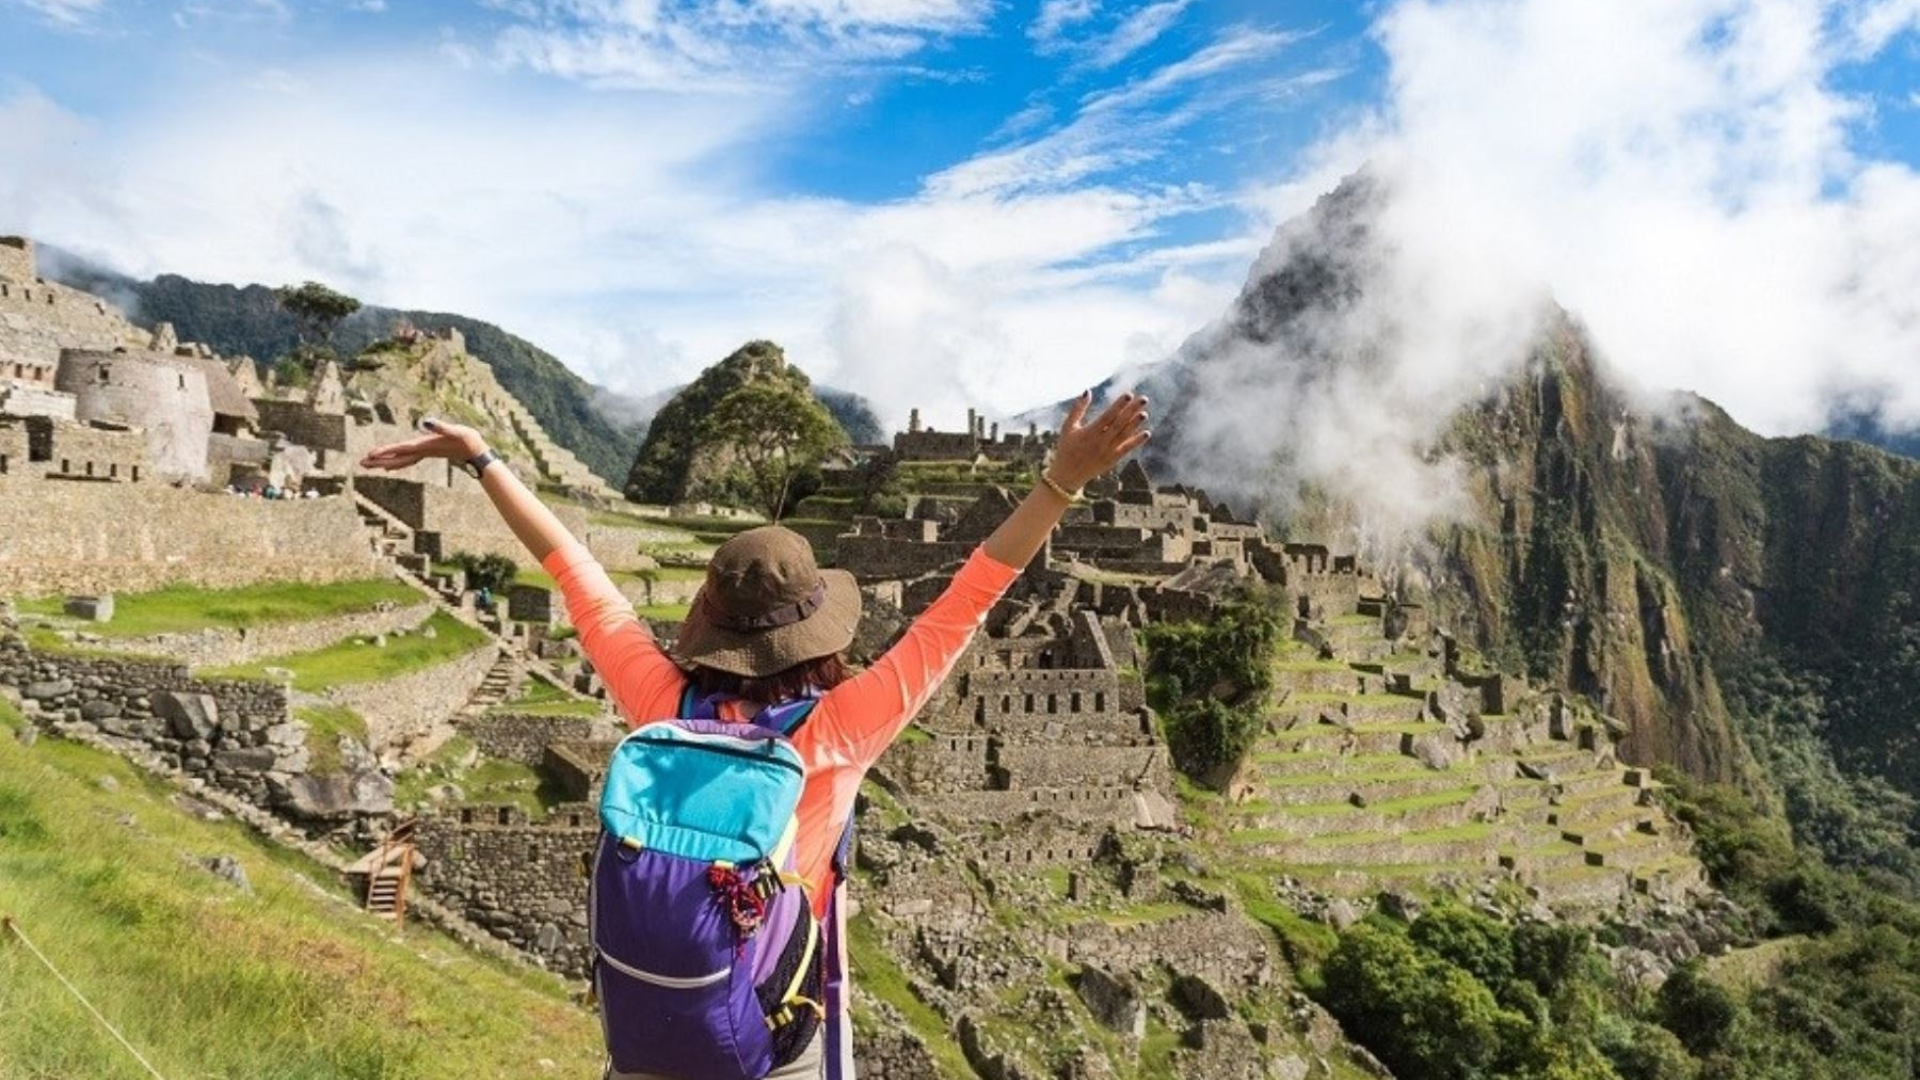 Entradas a Machu Picchu a S/50.00: proponen reducir tarifa para turistas peruanos